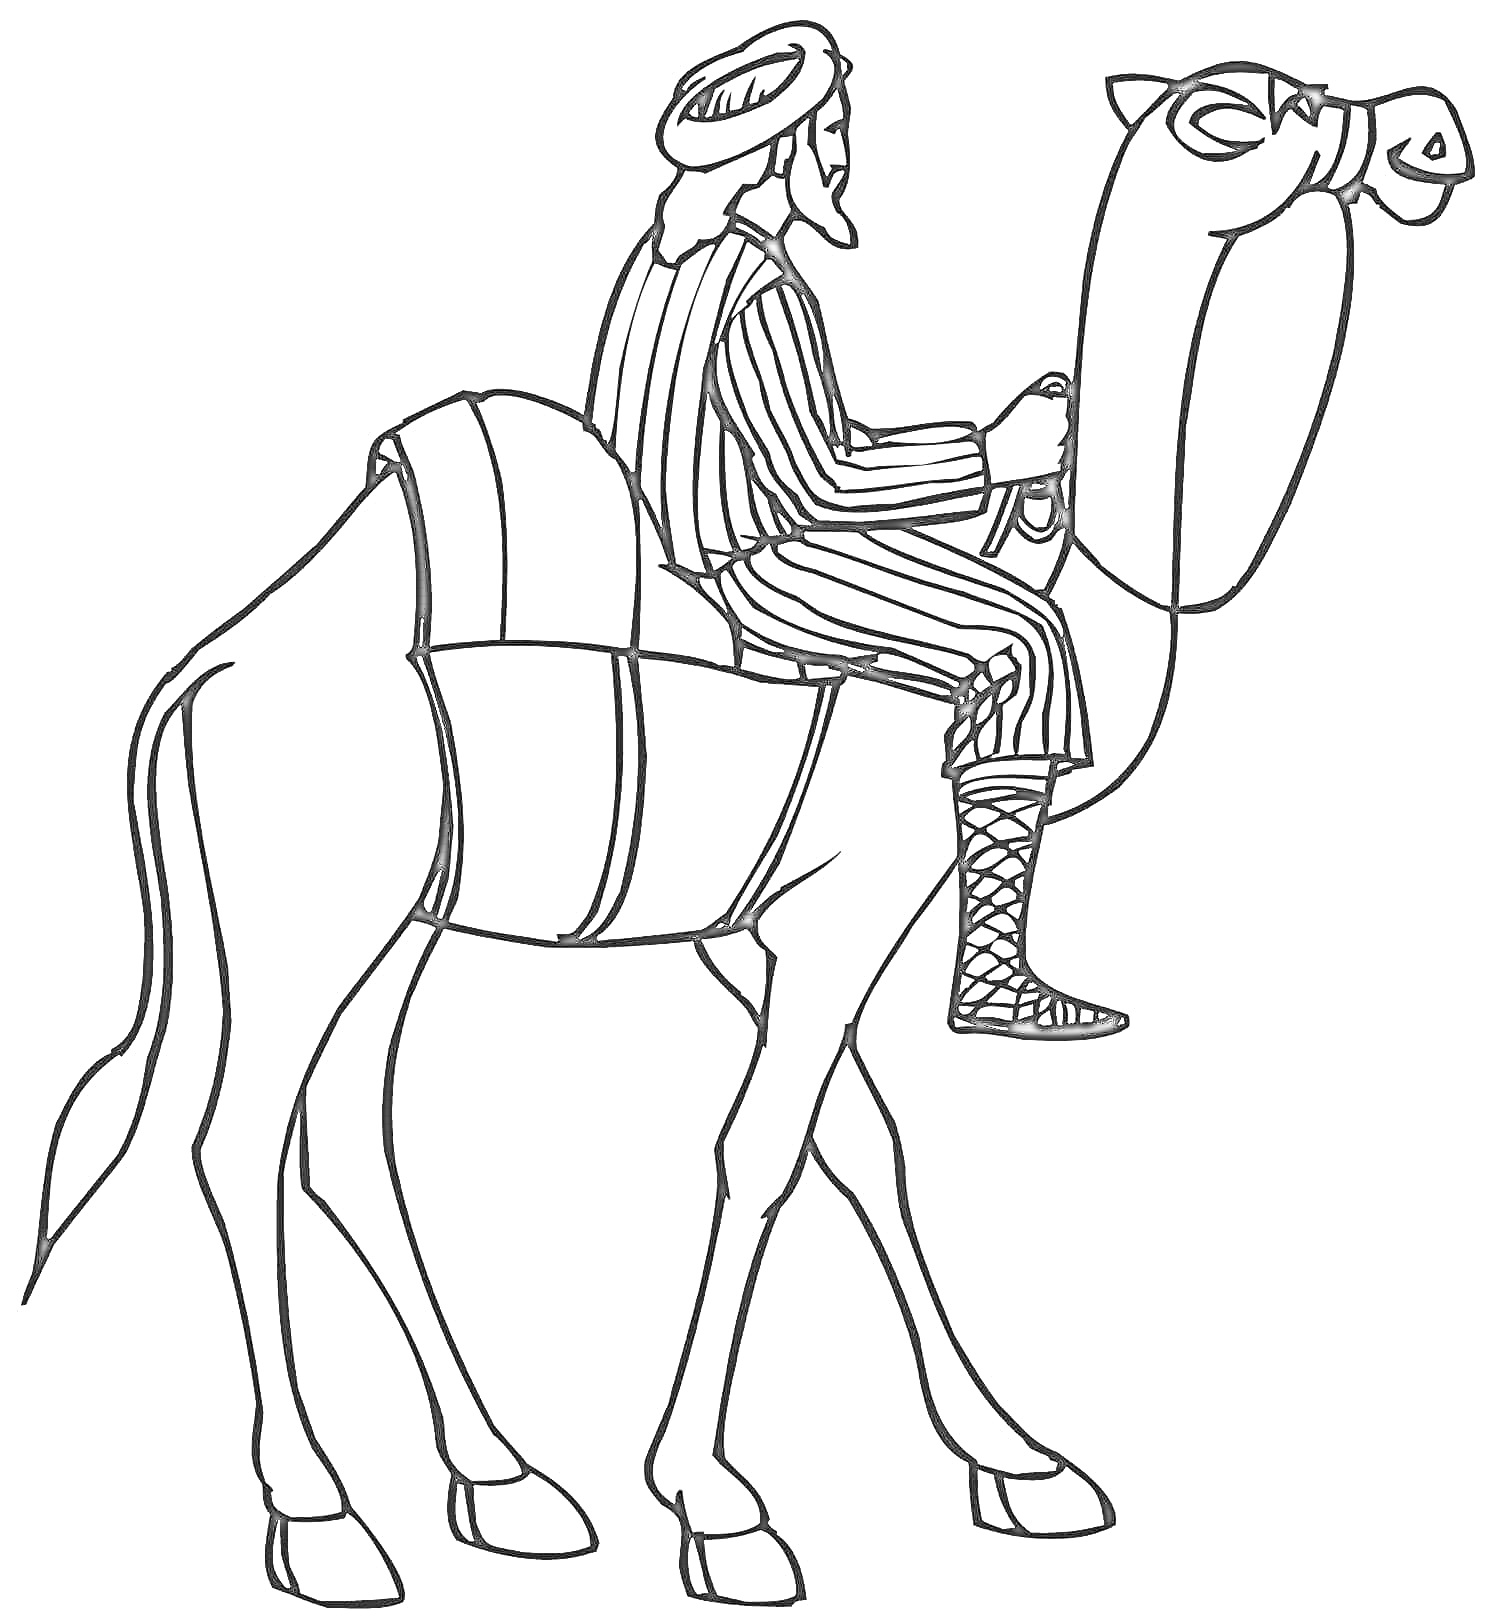 Человек верхом на верблюде в восточной одежде, с уздечкой и седлом